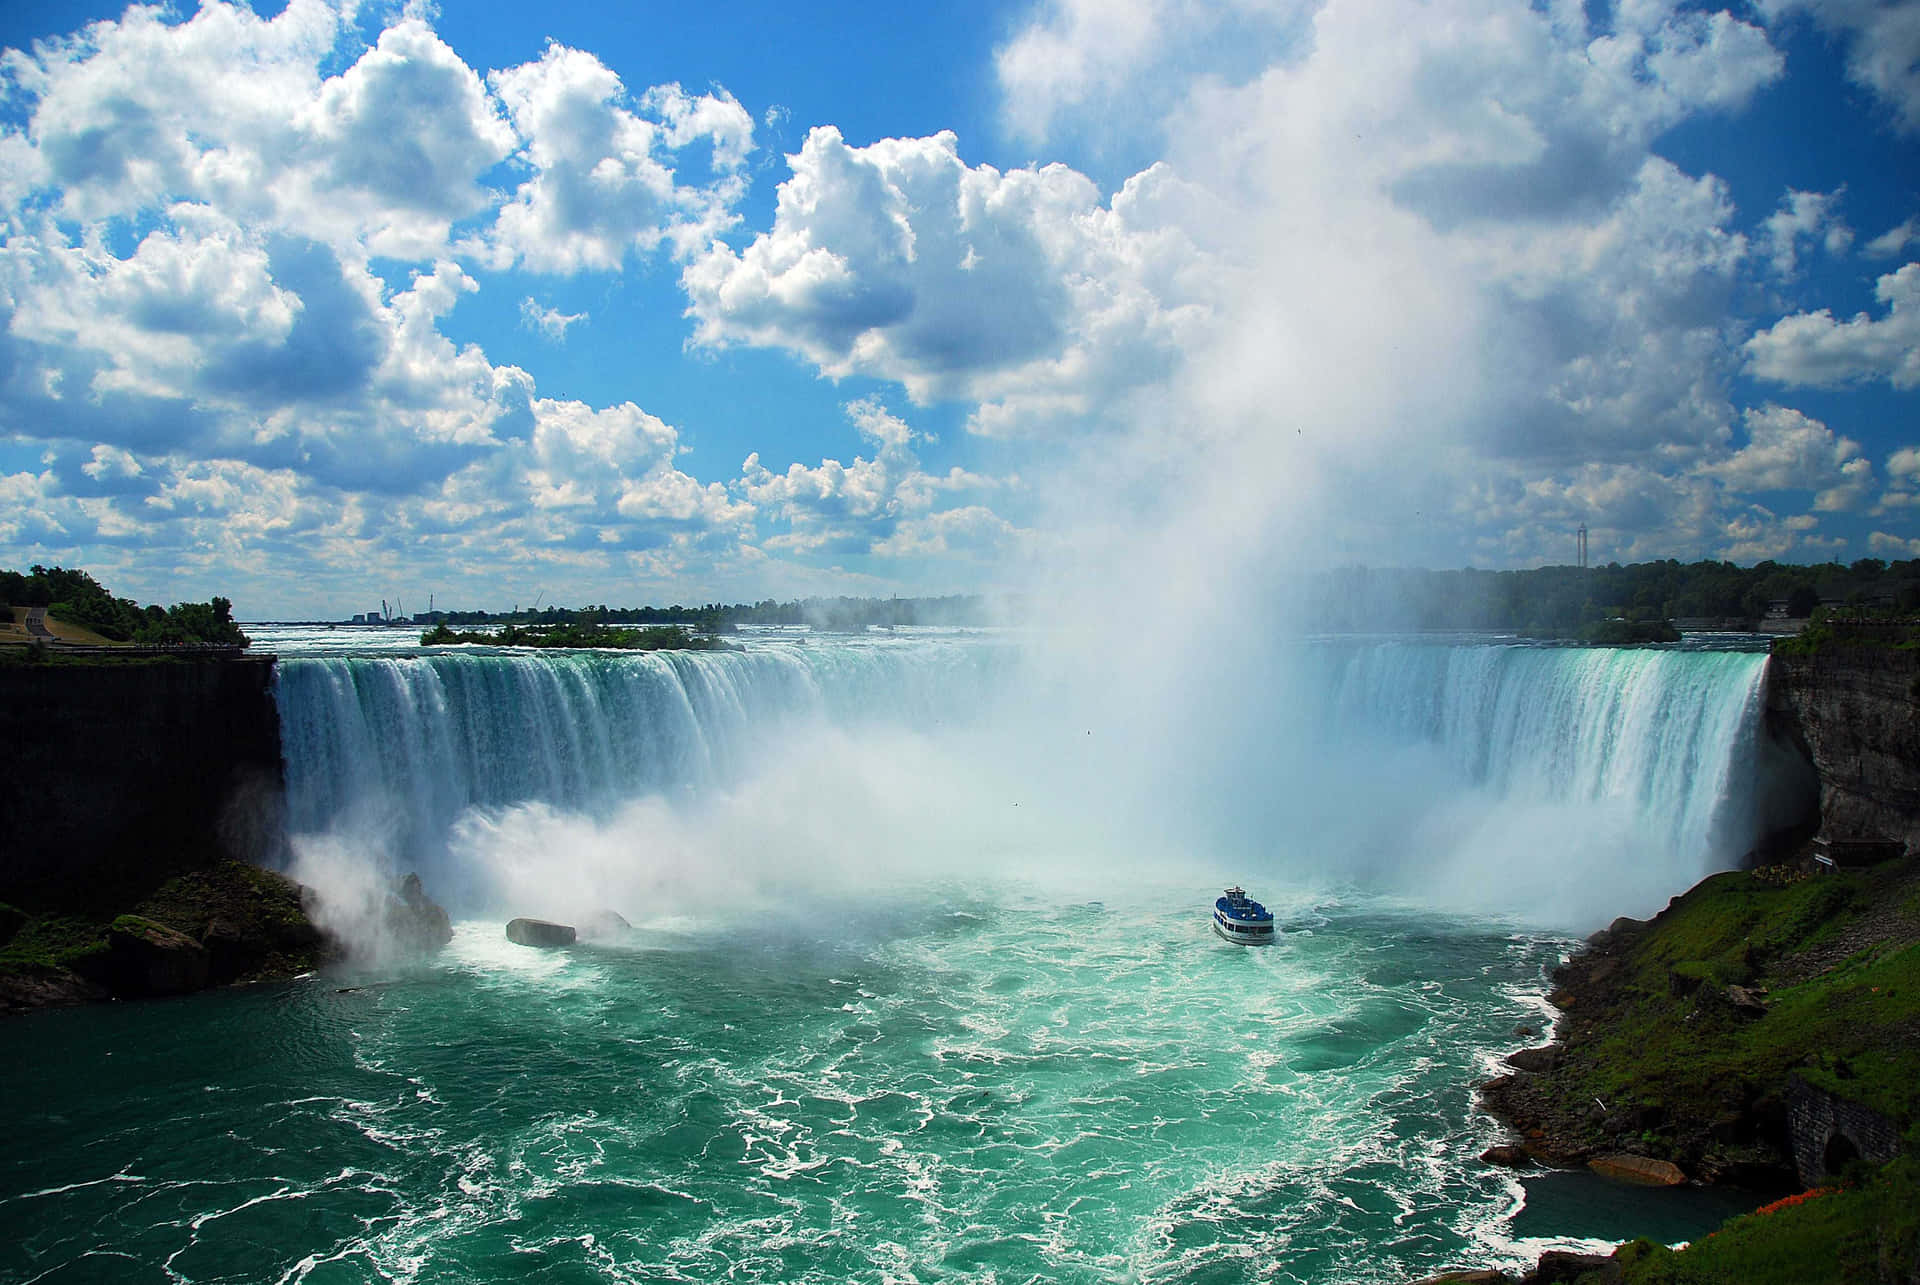 Niagara Falls, Canada, Niagara Falls, Canada, Niagara Falls, Canada, N